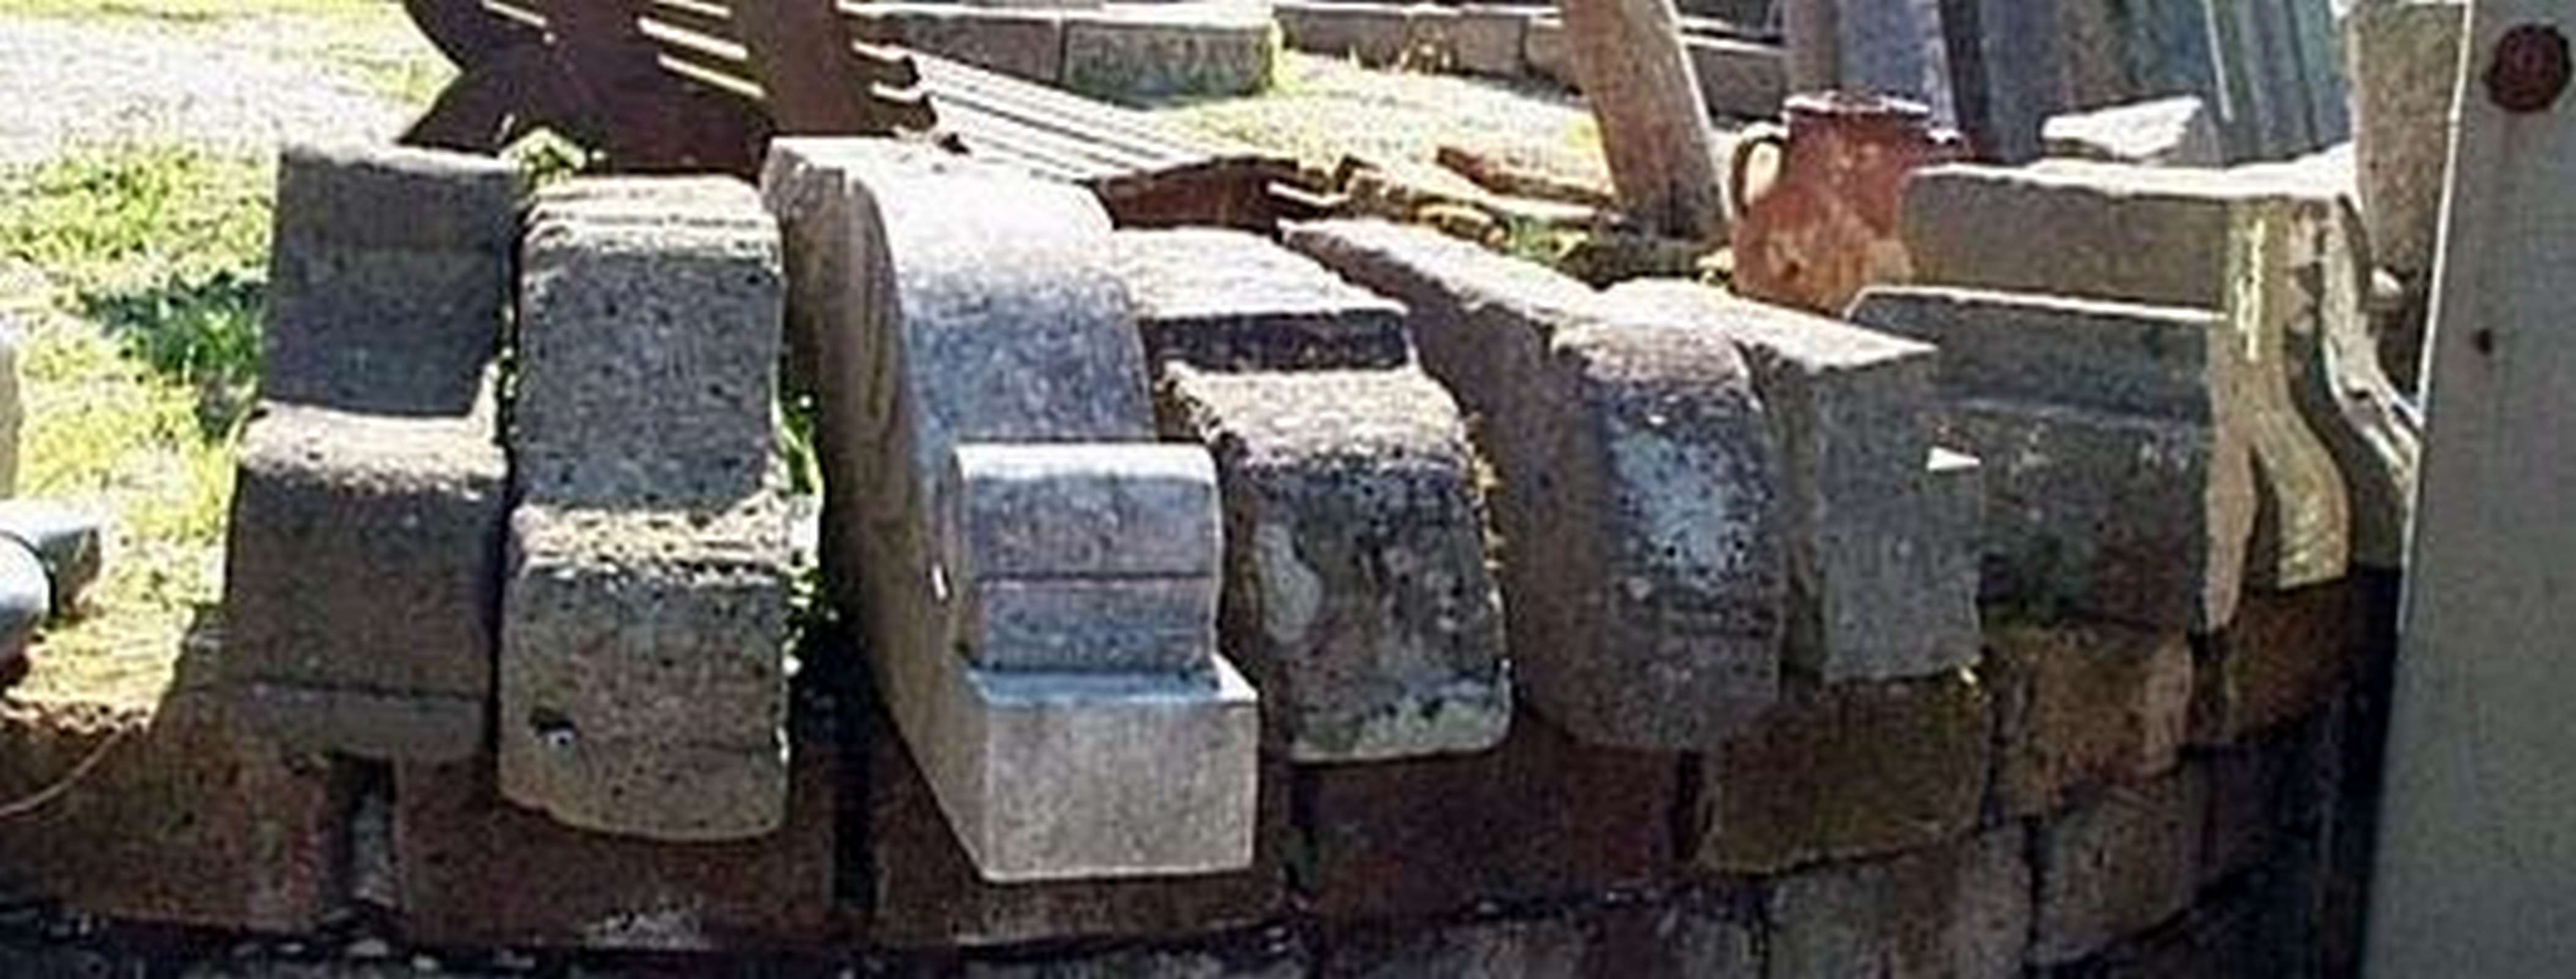 Nr. 5 mensole varie in pietra - Mensole antiche - Architettura - Prodotti - Antichità Fiorillo